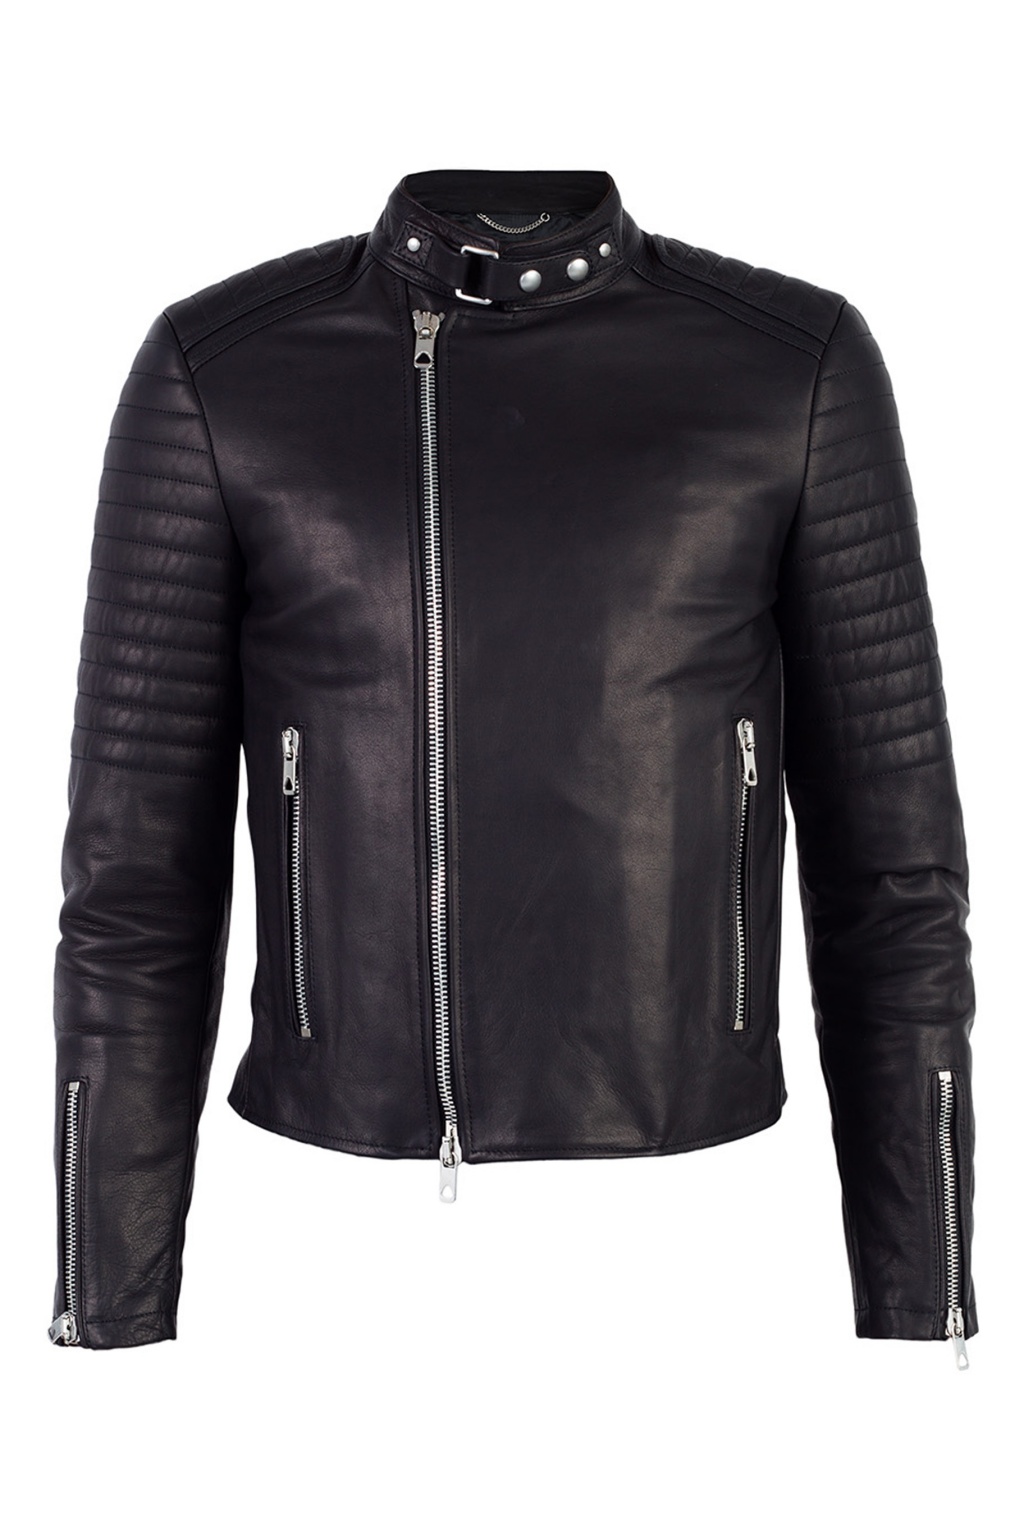 Diesel Leather jacket designed for SneakersbeShops